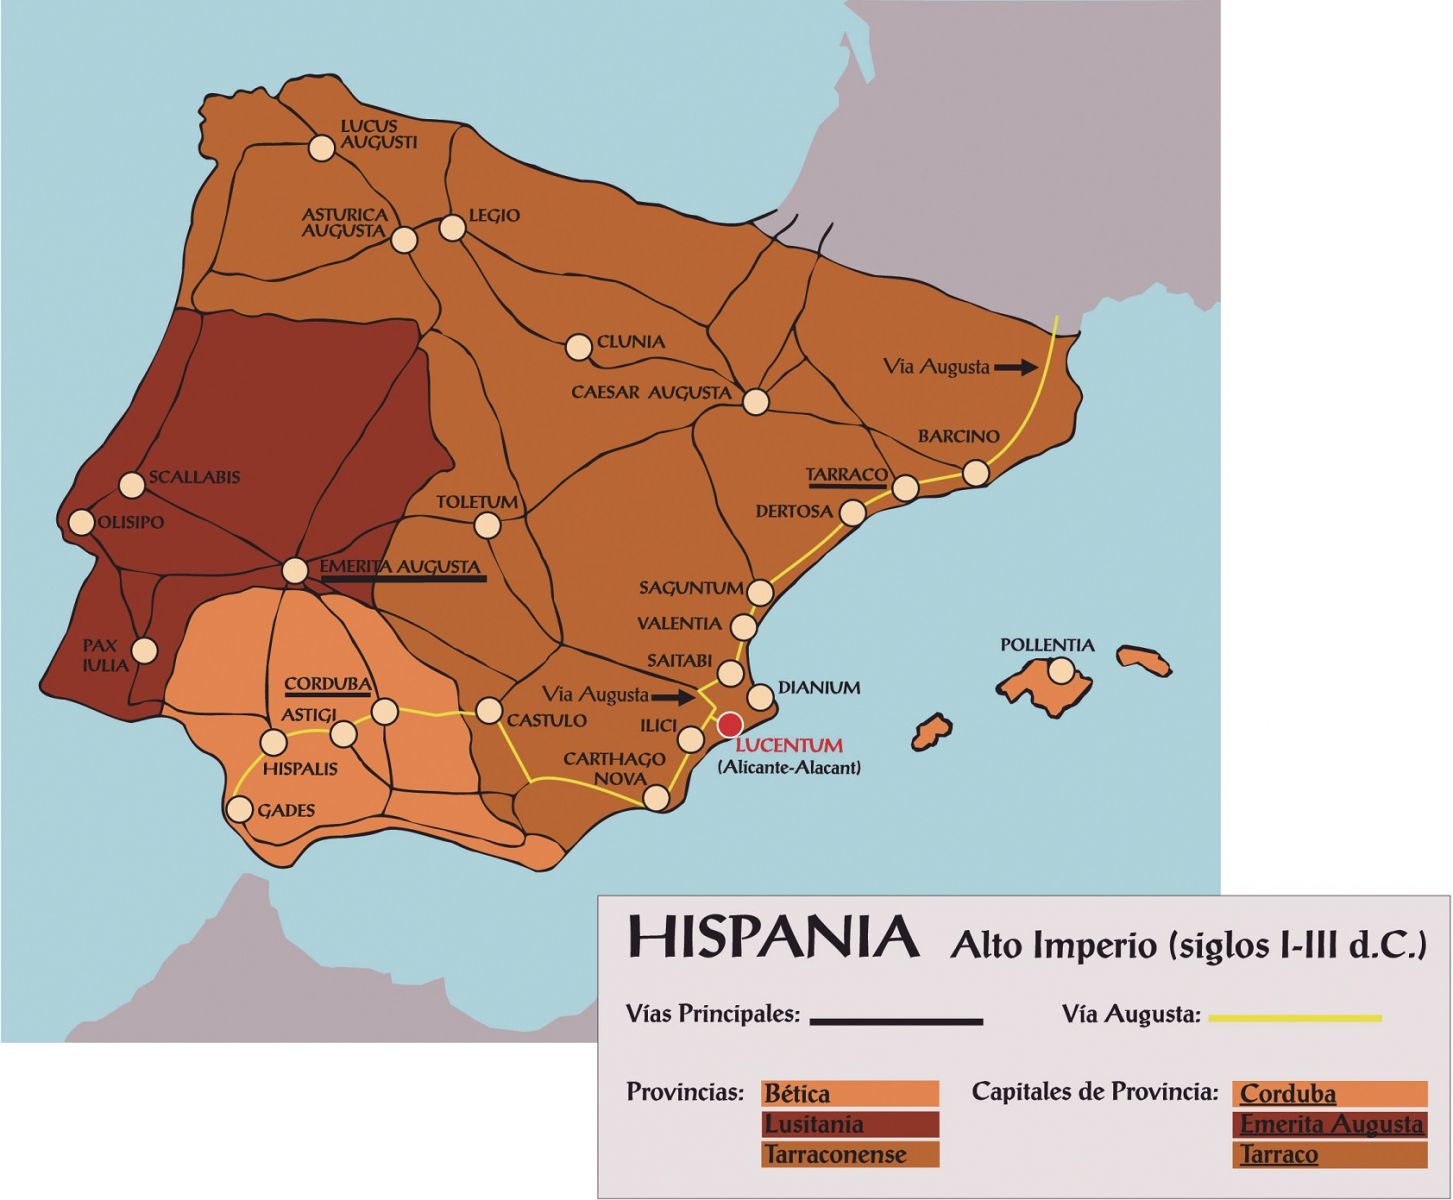 Hispania Alto Imperio